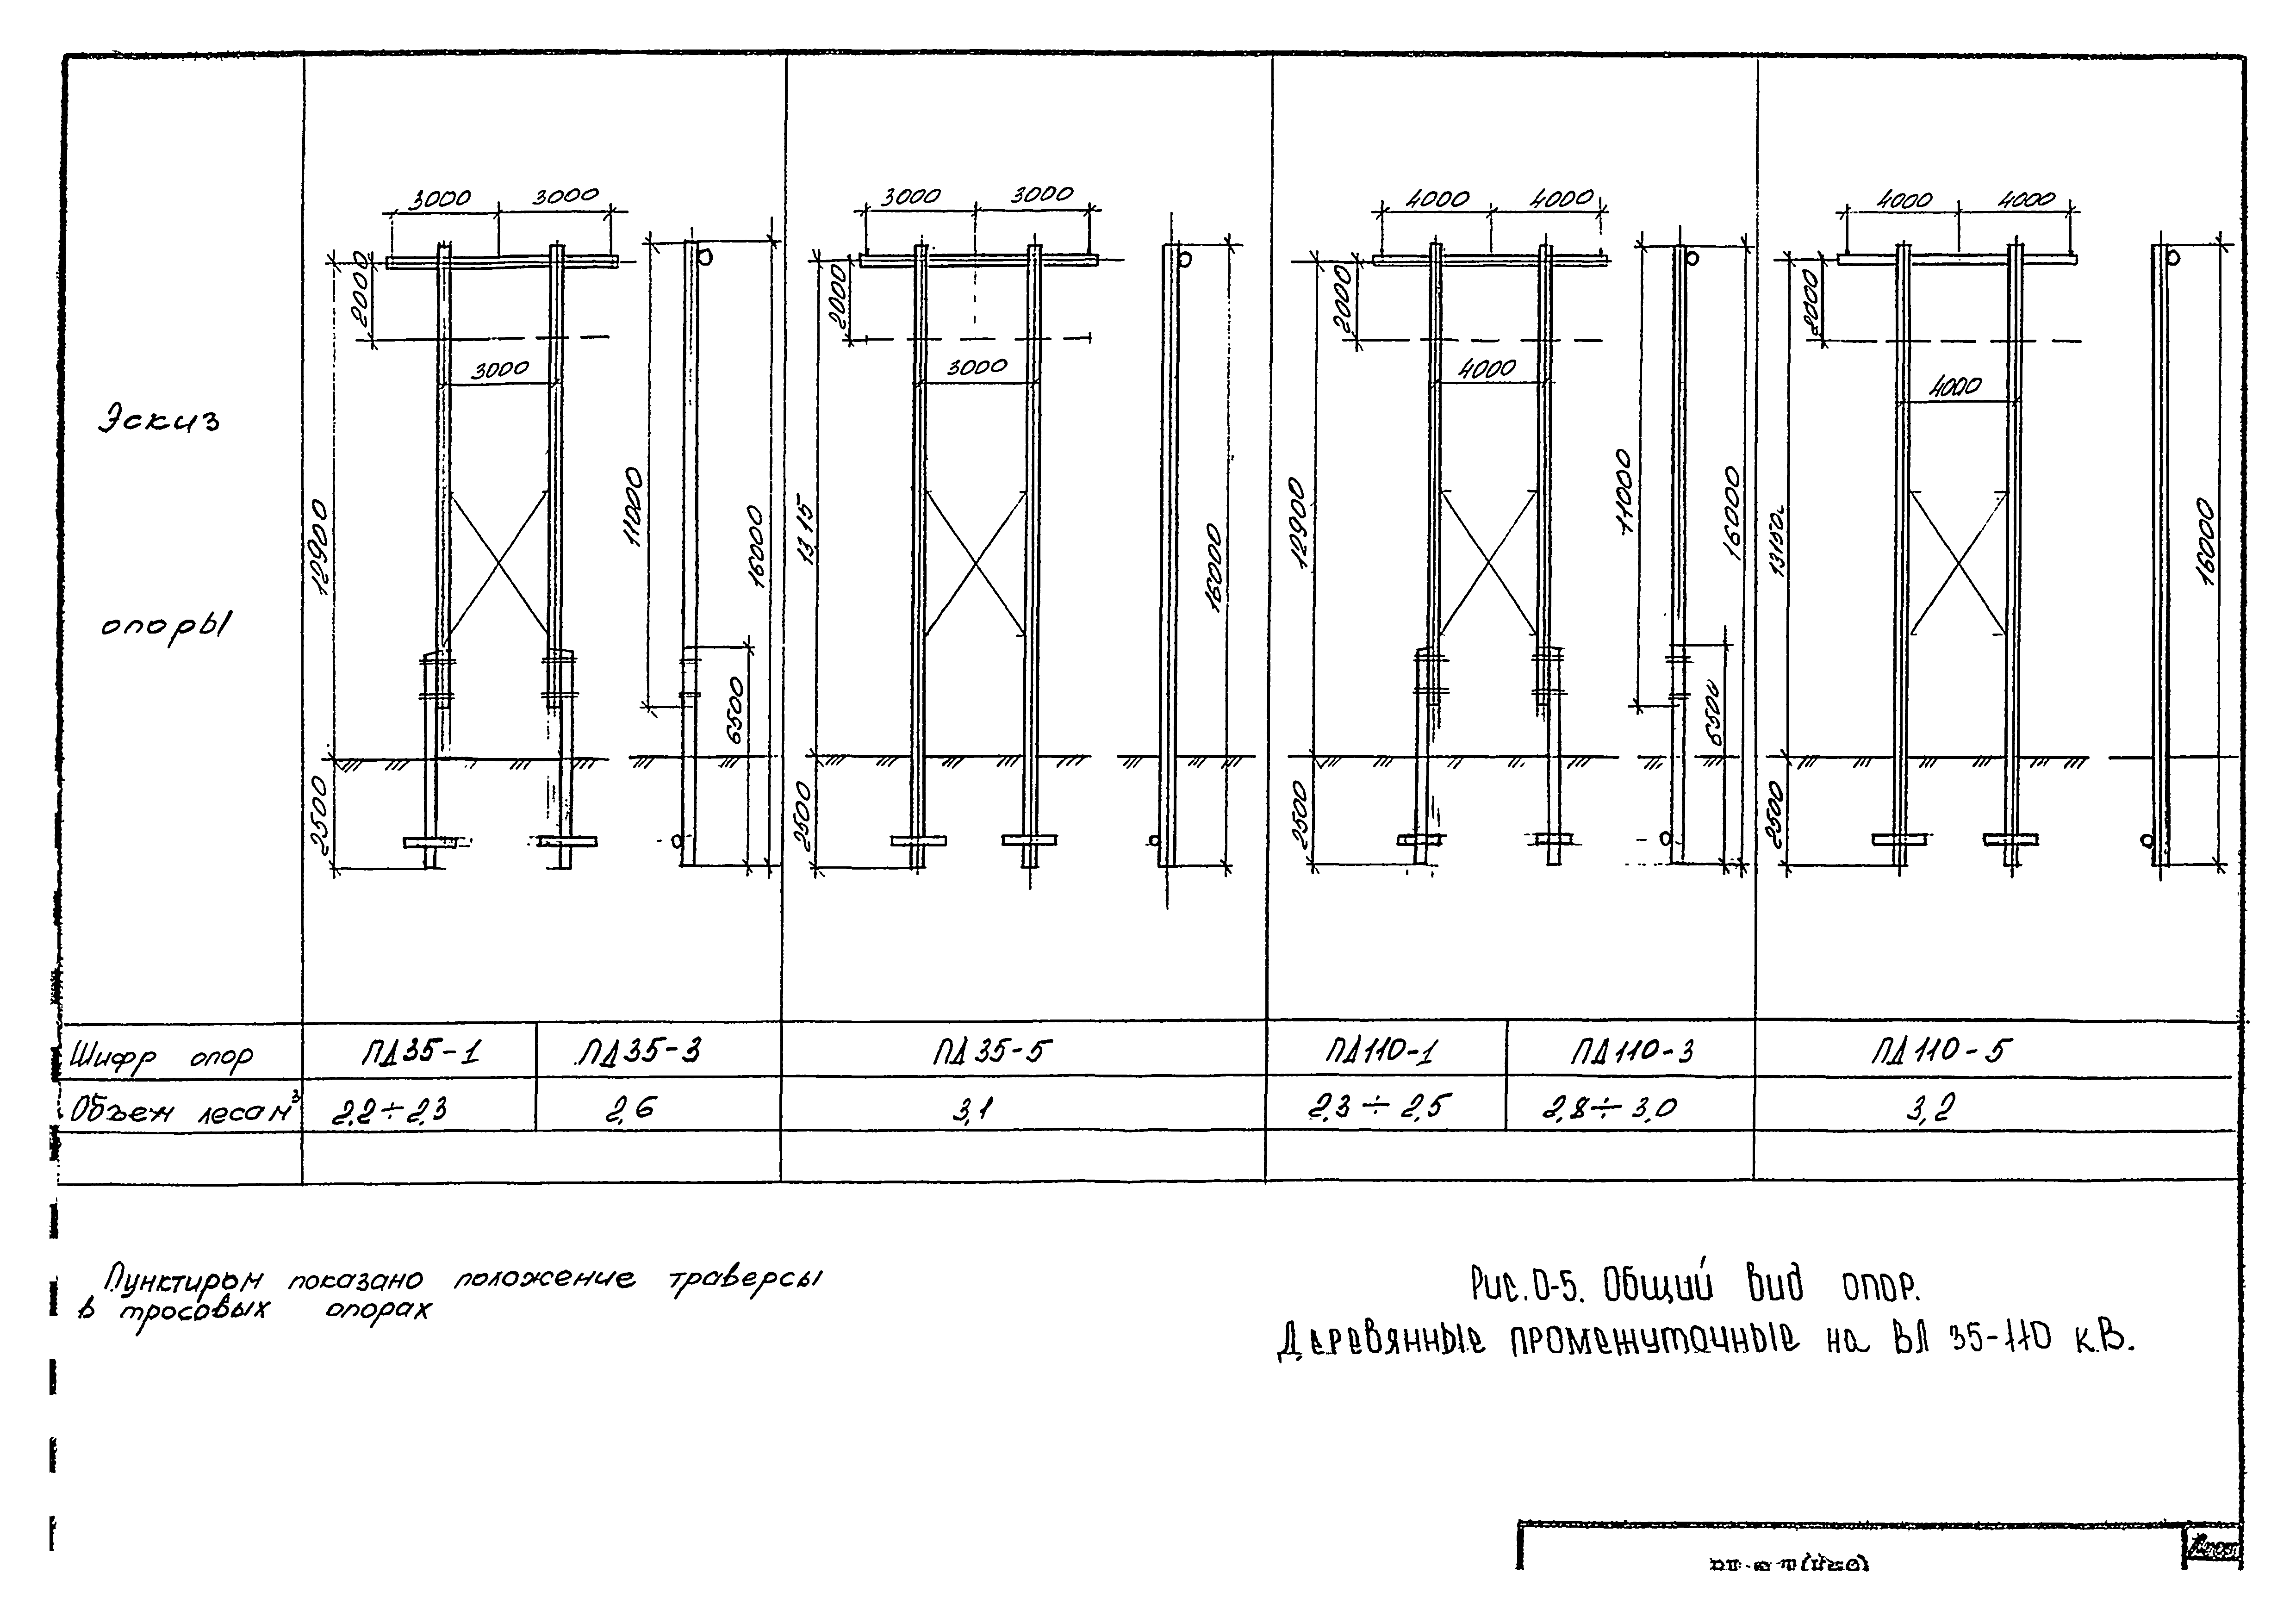 Технологическая карта К-9-2